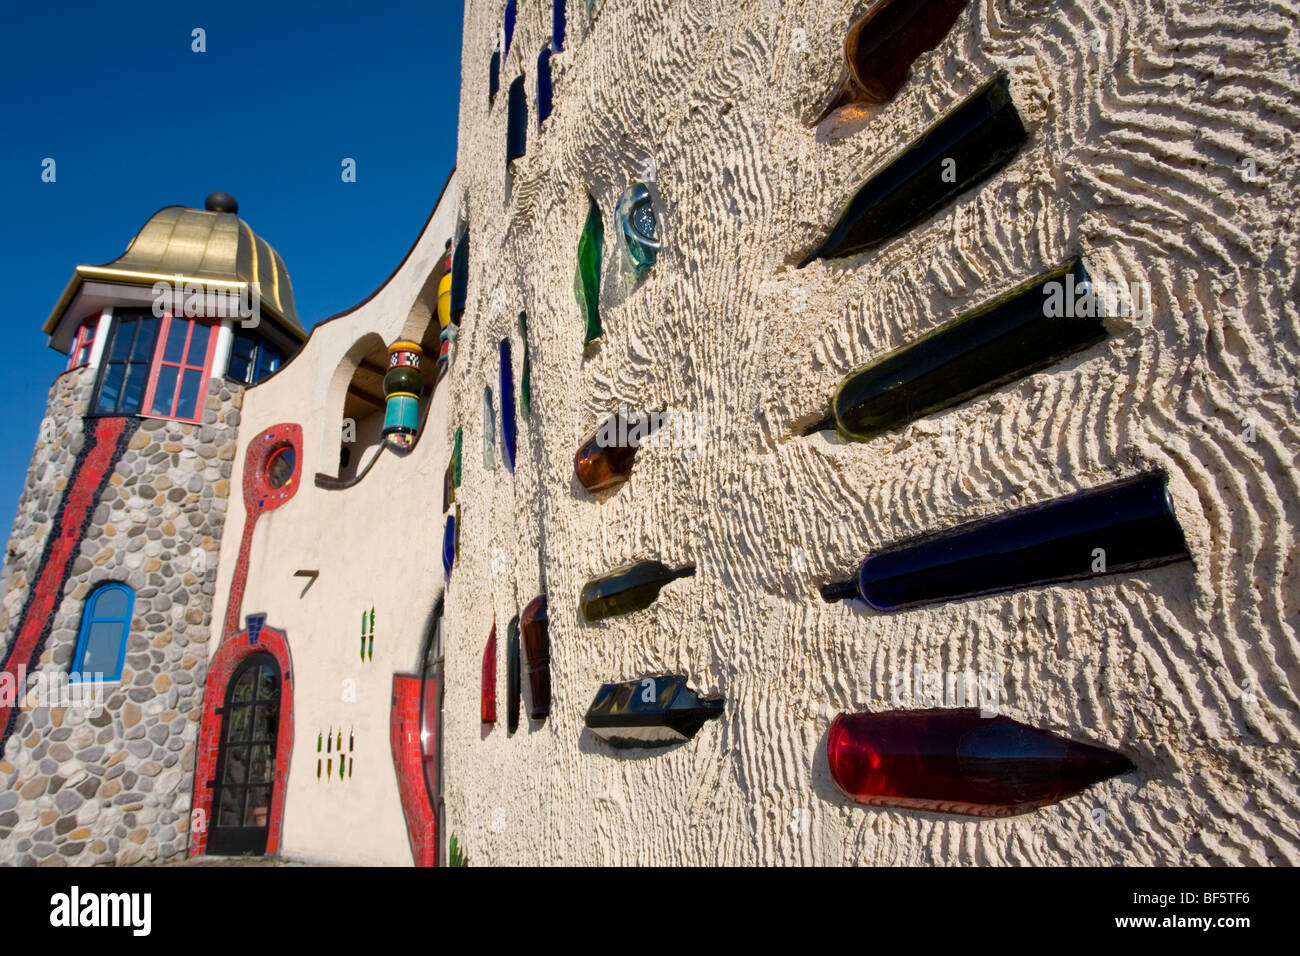 Hundertwasser-Markthalle, Market Hall, Altenrhein, Lake Constance, Canton St Gallen, Switzerland Stock Photo